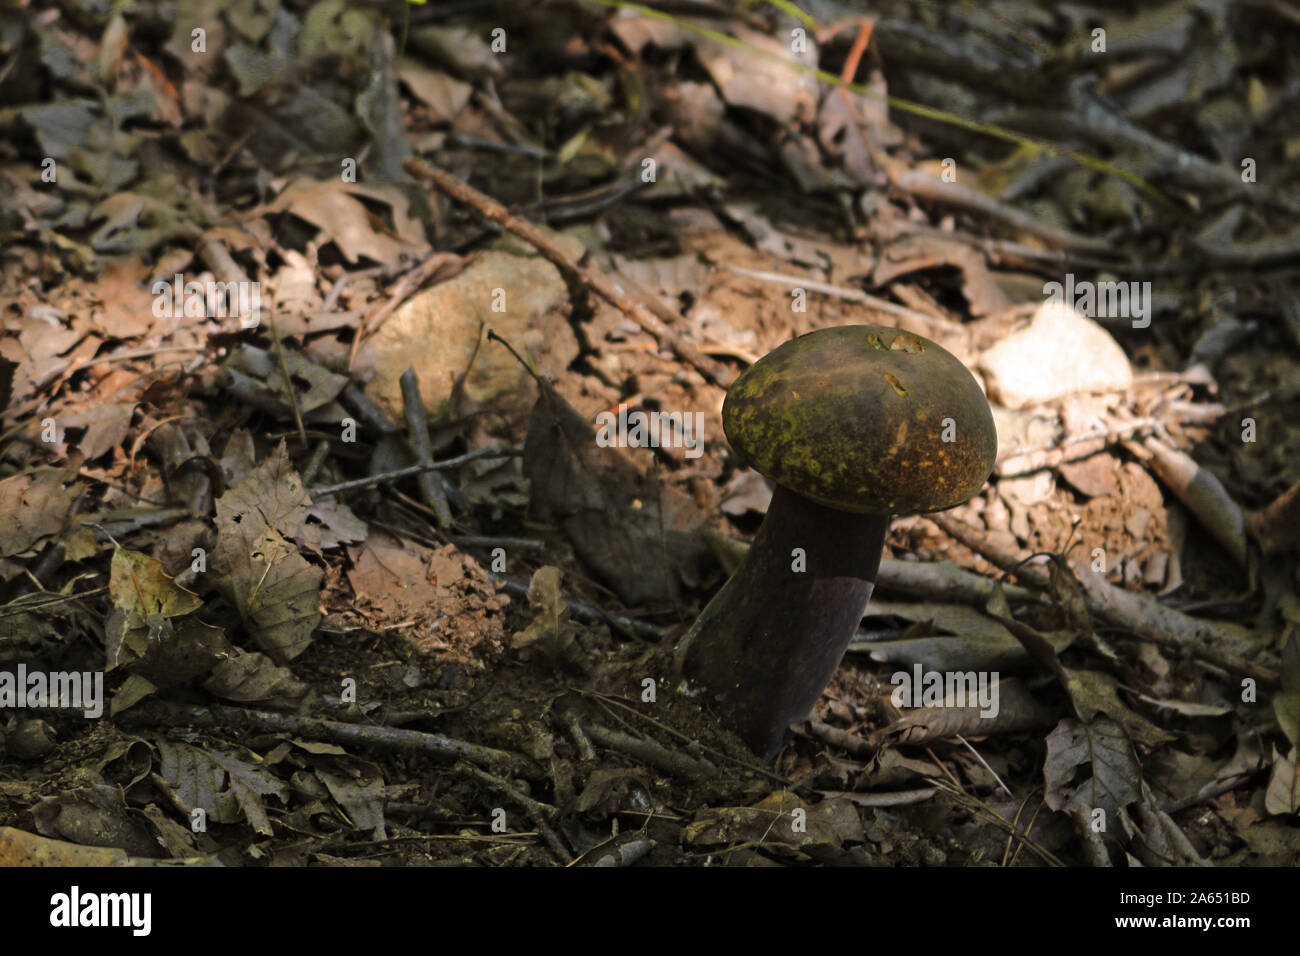 Paysage d'automne avec des champignons et des feuilles mortes Banque D'Images